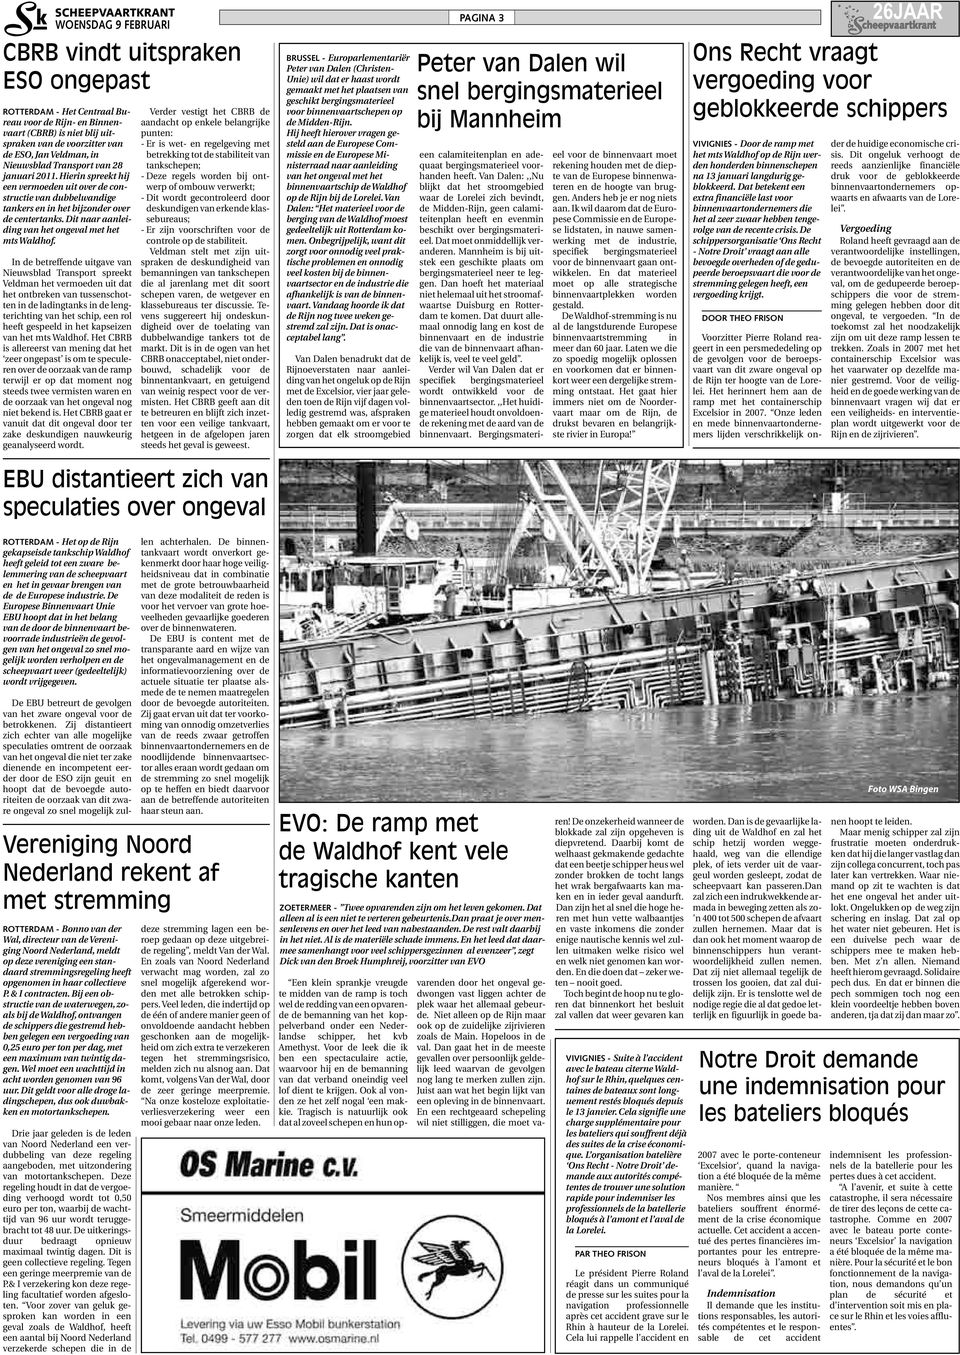 In de betreffende uitgave van Nieuwsblad Transport spreekt Veldman het vermoeden uit dat het ontbreken van tussenschotten in de ladingtanks in de lengterichting van het schip, een rol heeft gespeeld